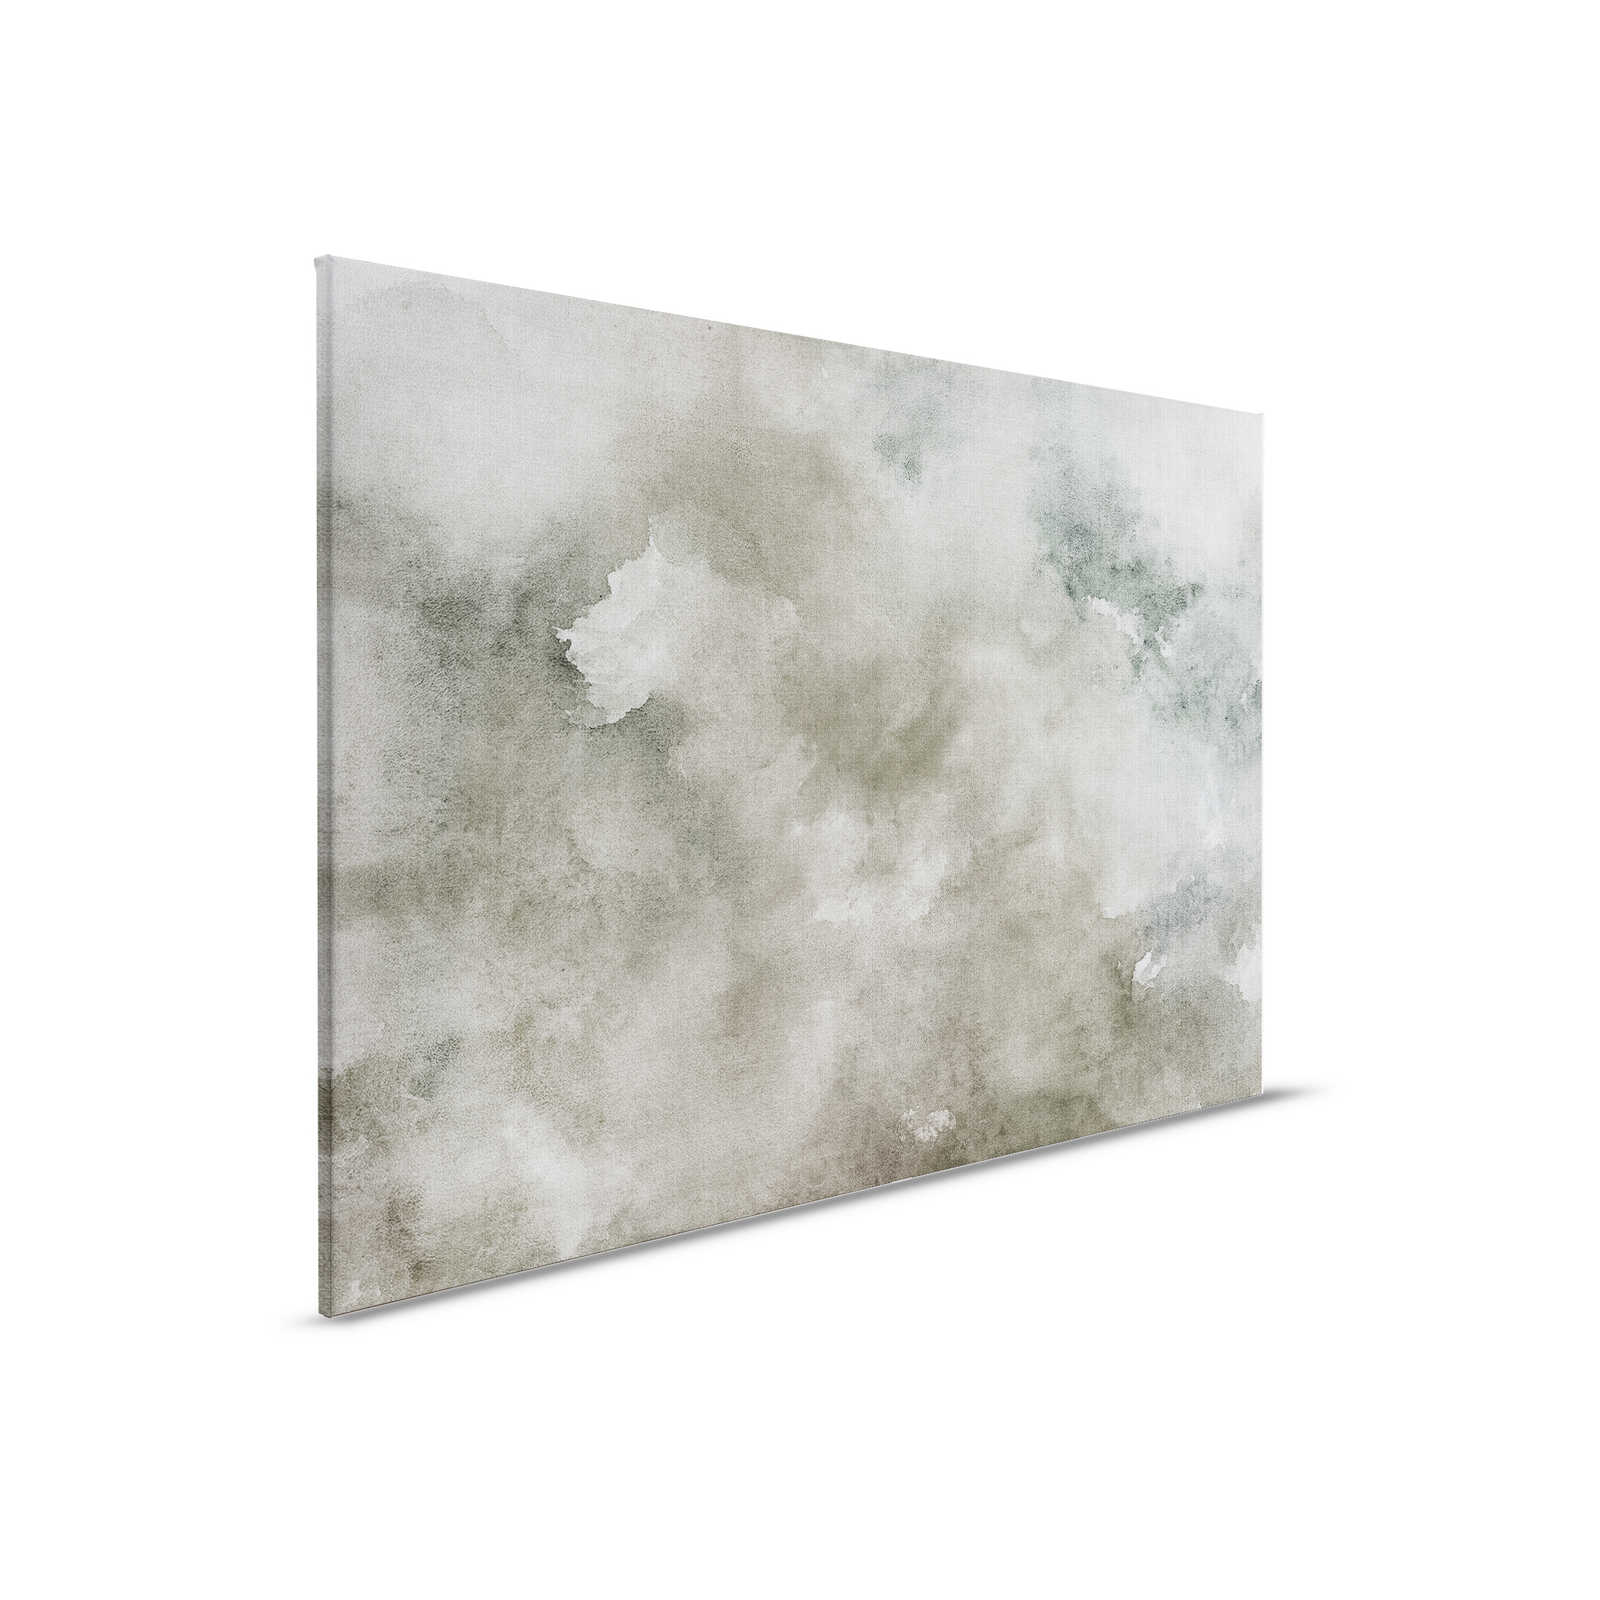 Acuarelas 1 - Pintura sobre lienzo en acuarela gris con aspecto de lino natural - 0,90 m x 0,60 m
